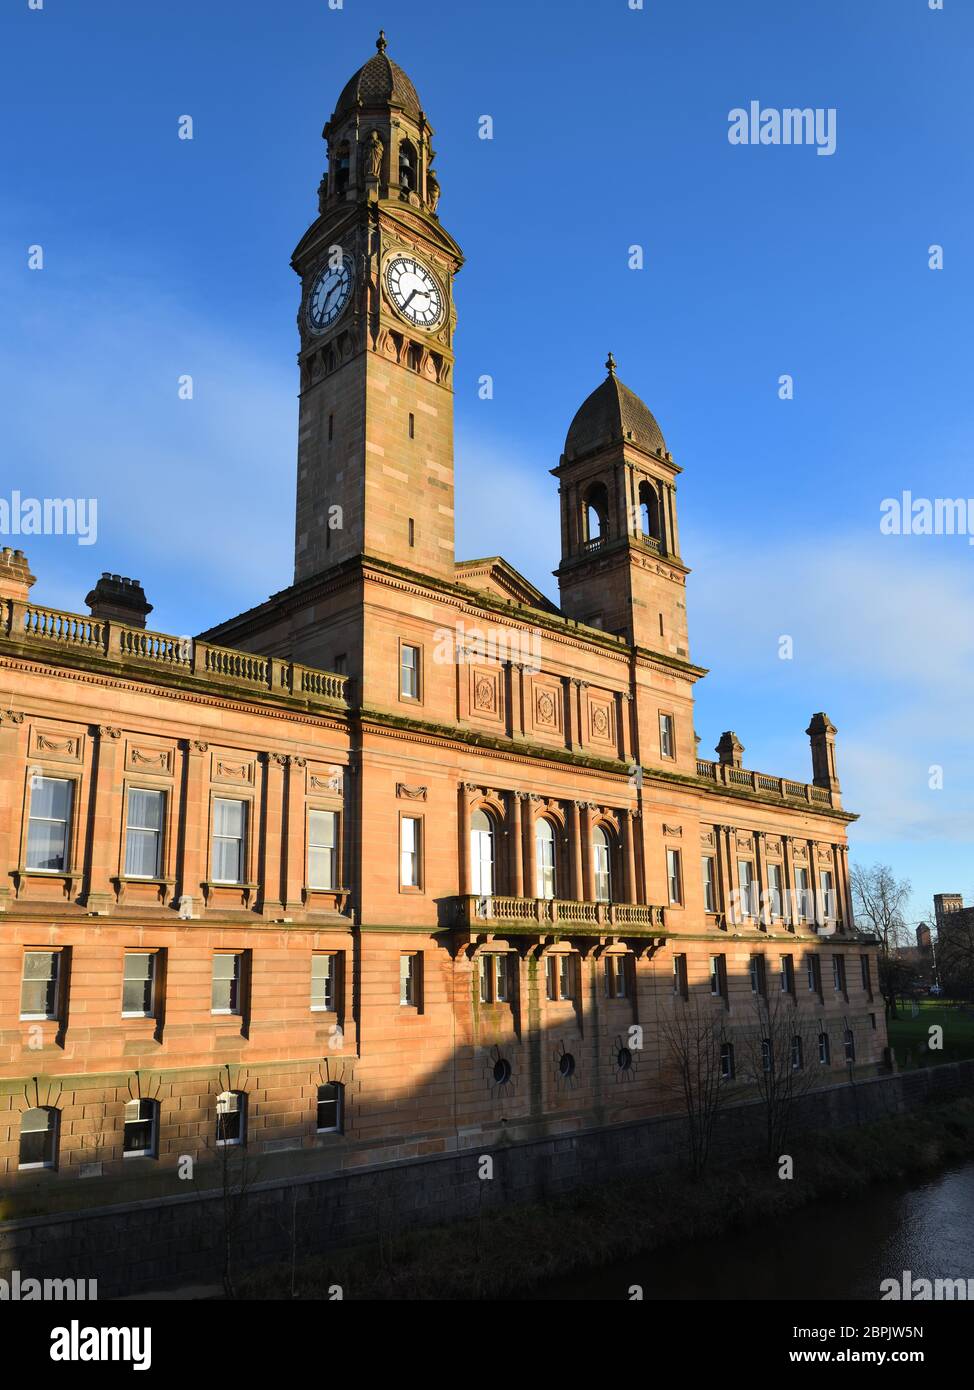 Die Rückseite der Paisley Town Hall Gemeindeeinrichtung und Uhrturm in Renfrewshire, Schottland, Großbritannien, Europa Es ist ein Kategorie A denkmalgeschützten Gebäude. Stockfoto